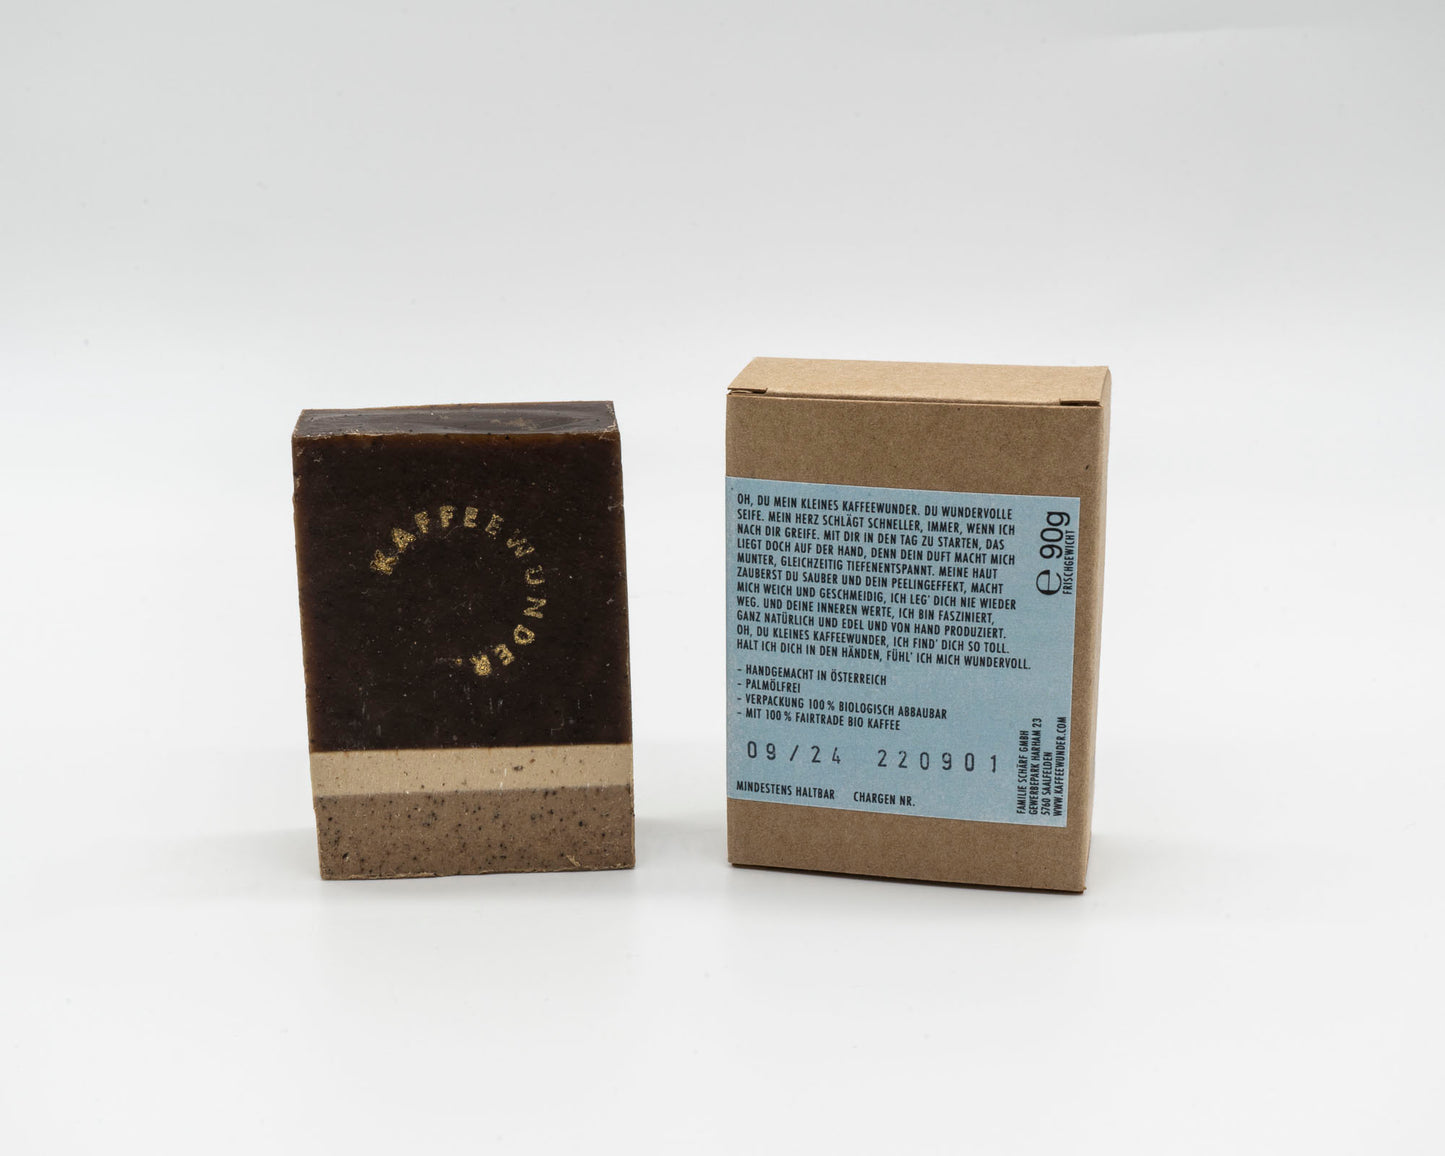 Kaffeewunder® coffee soap